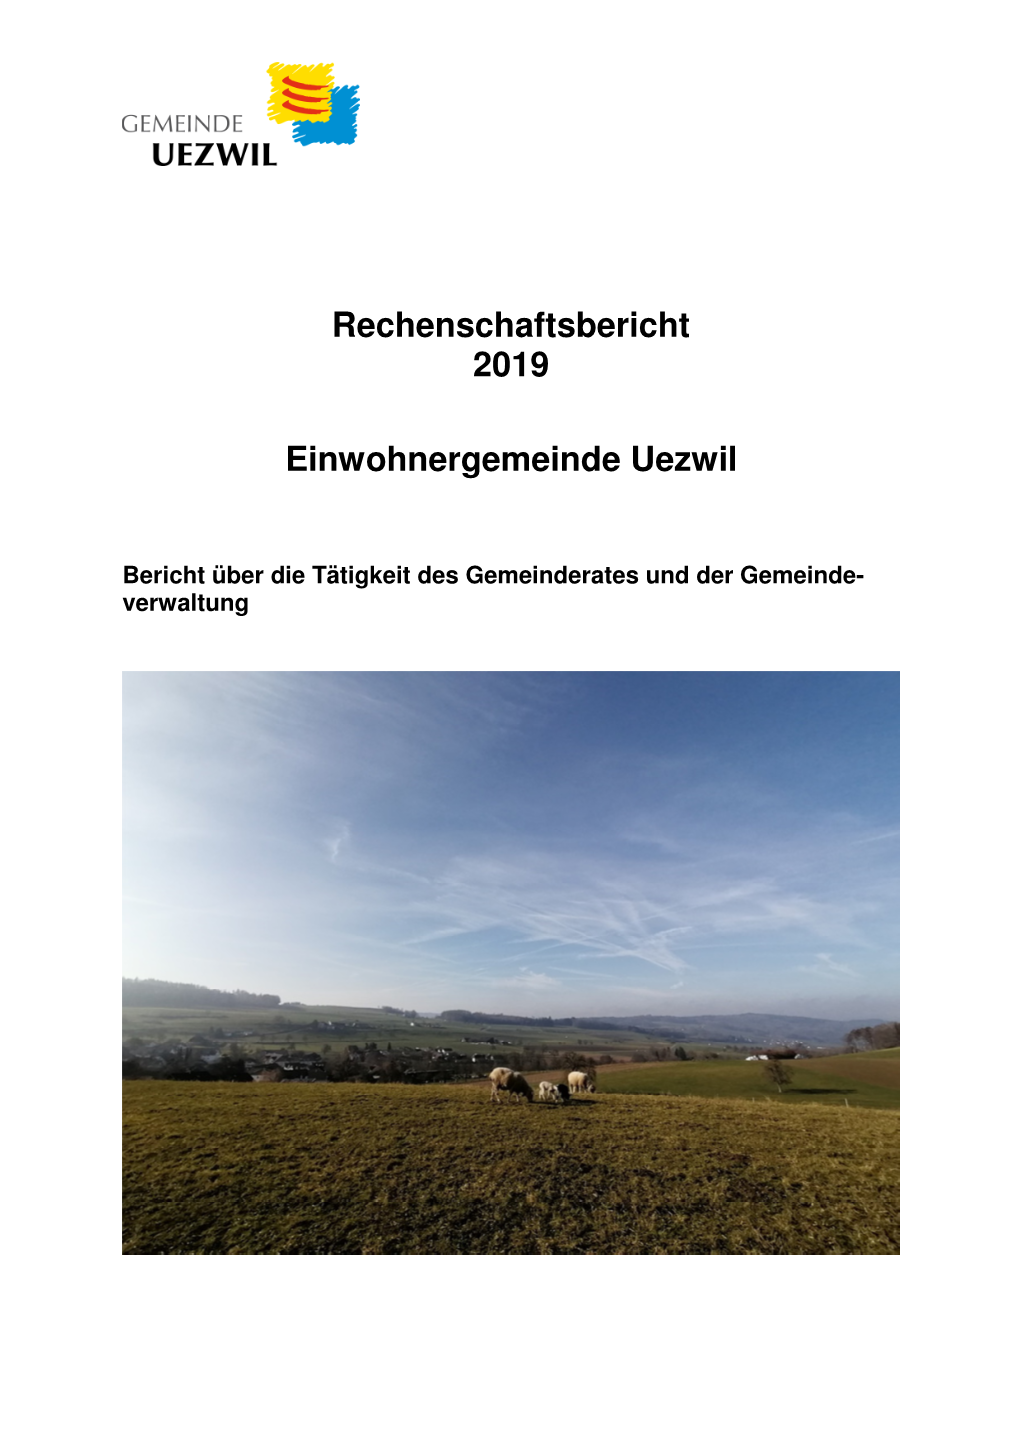 Rechenschaftsbericht EWG 2019, Überarbeiteter Entwurf